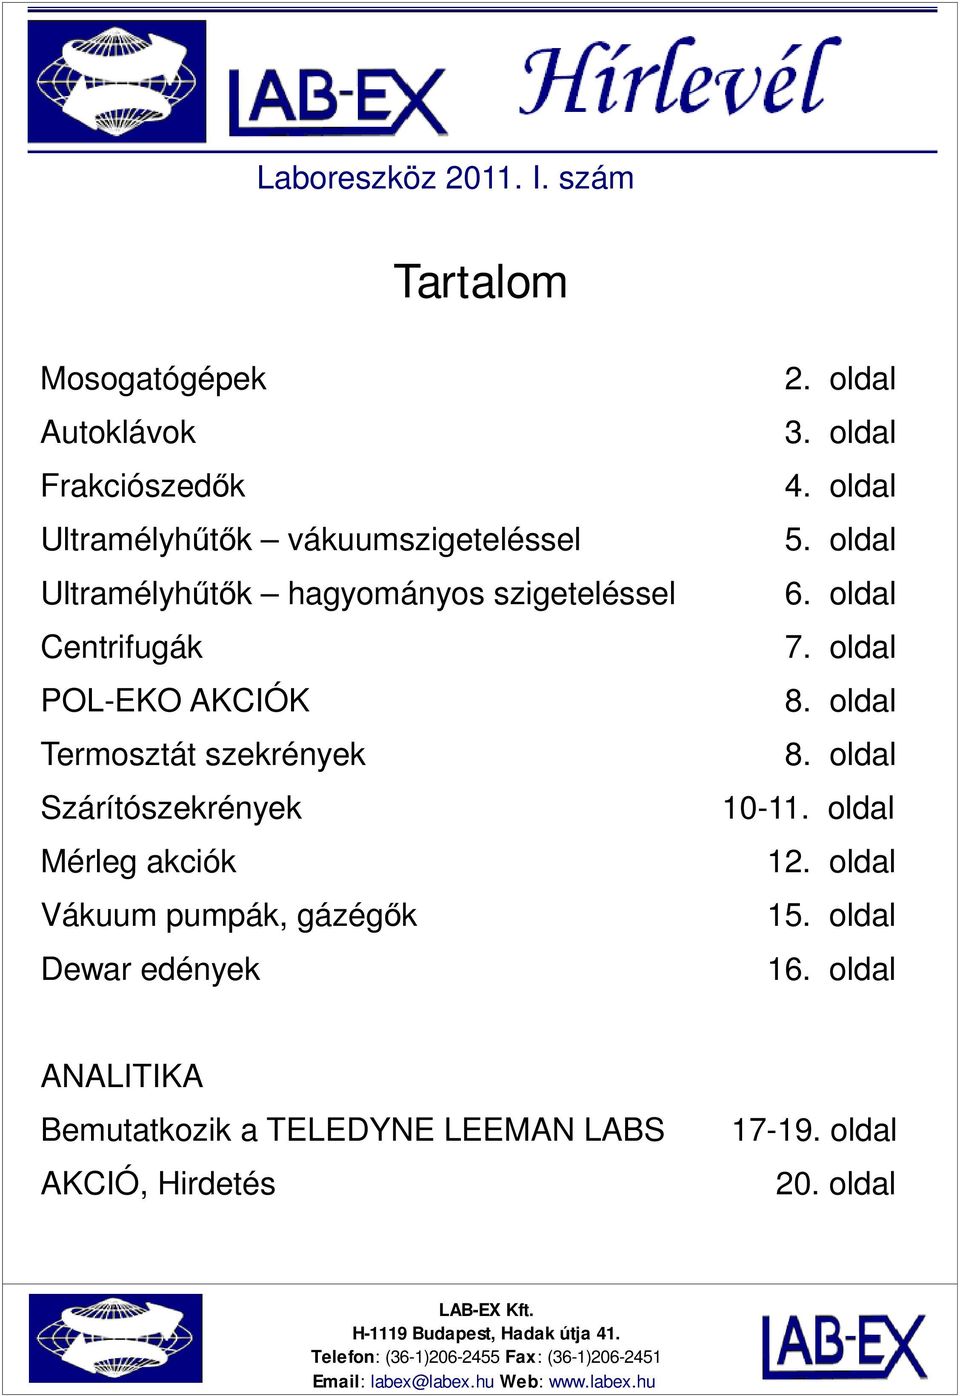 Laboreszköz I. szám. Tartalom - PDF Ingyenes letöltés